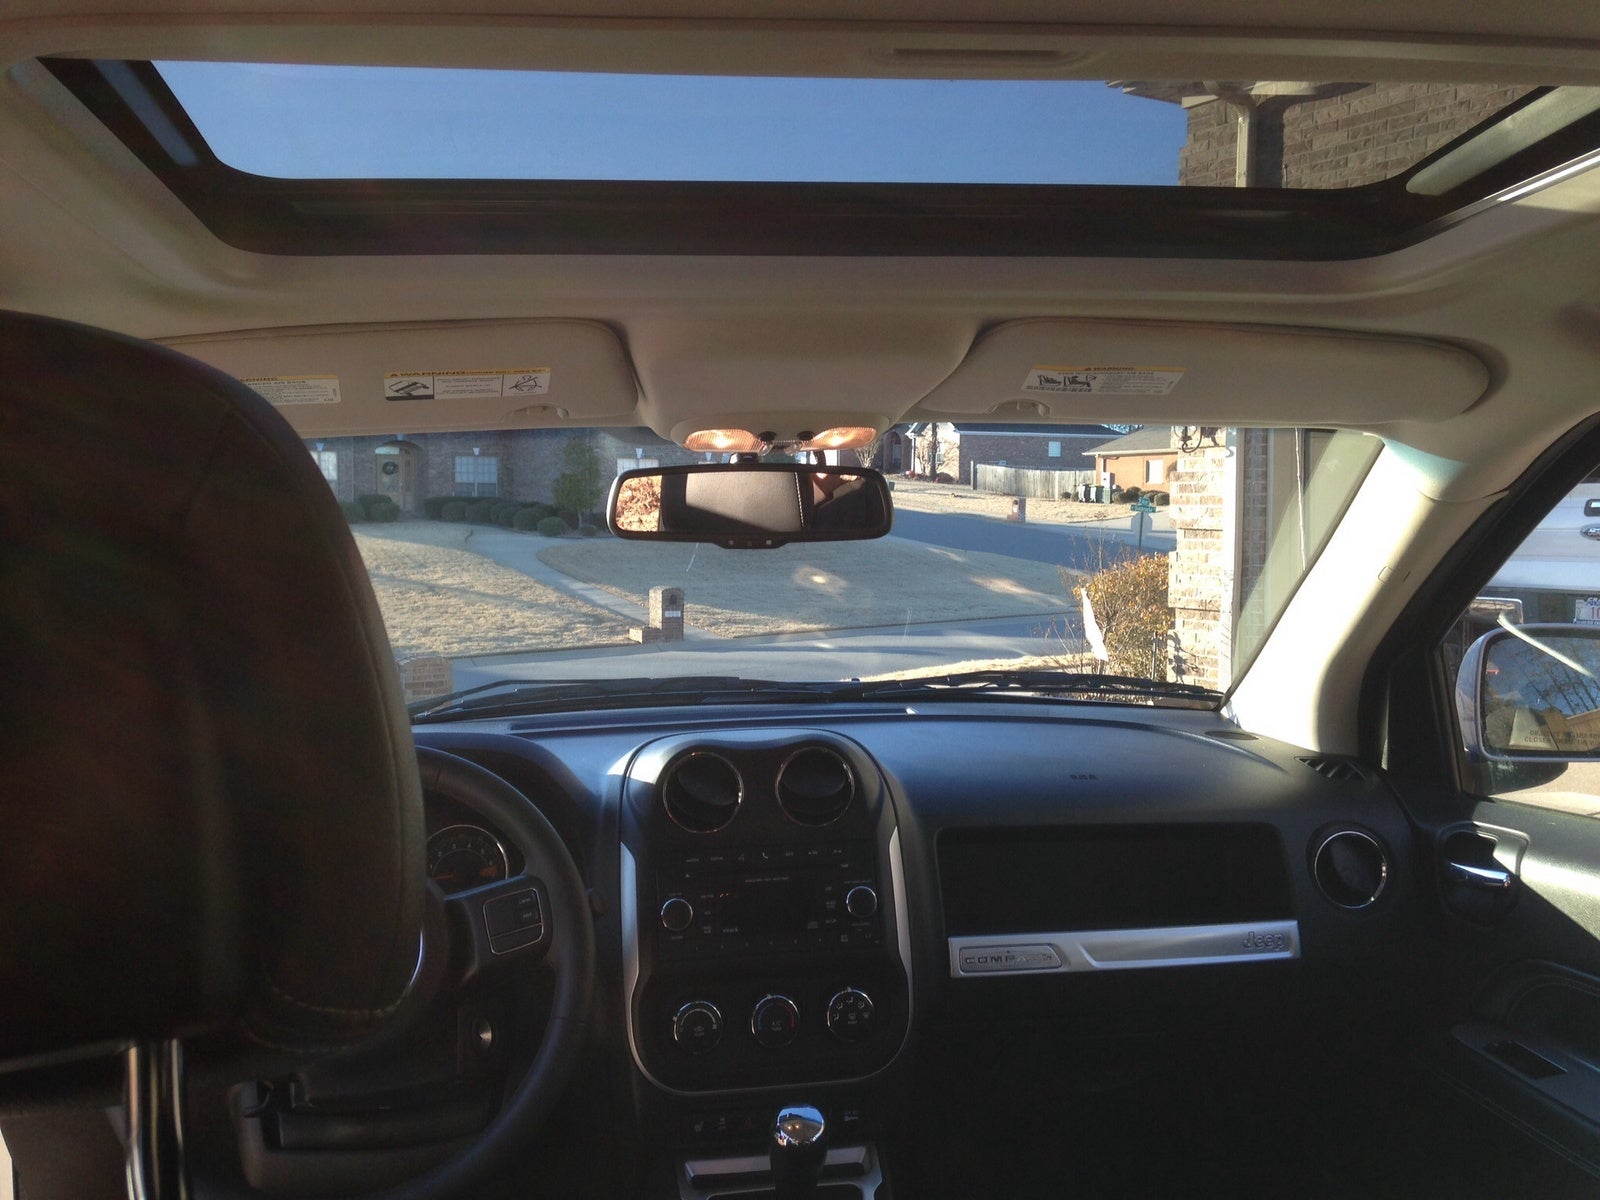 2014 Jeep Compass - Interior Pictures - CarGurus